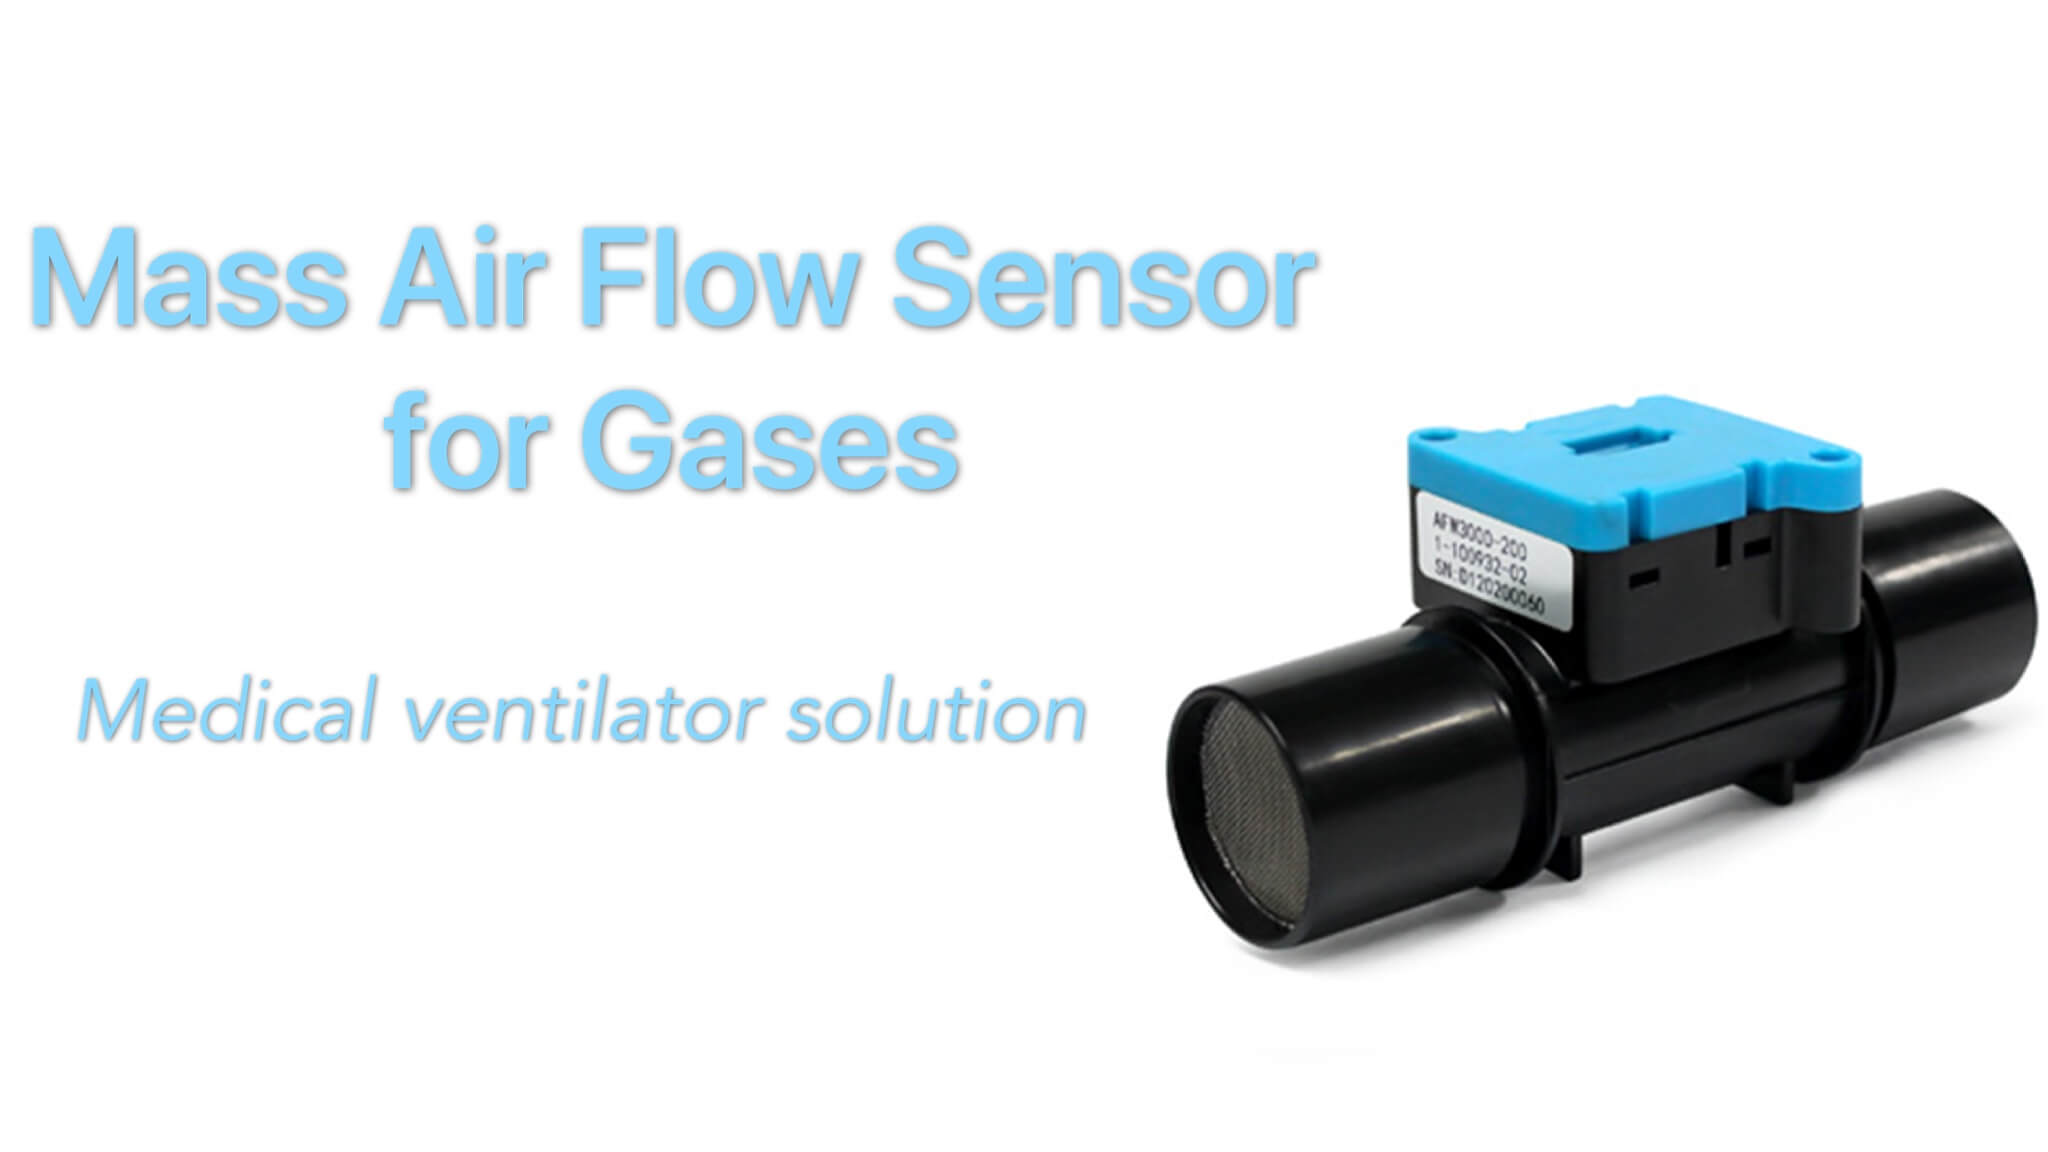 Mass Air Flow Sensors